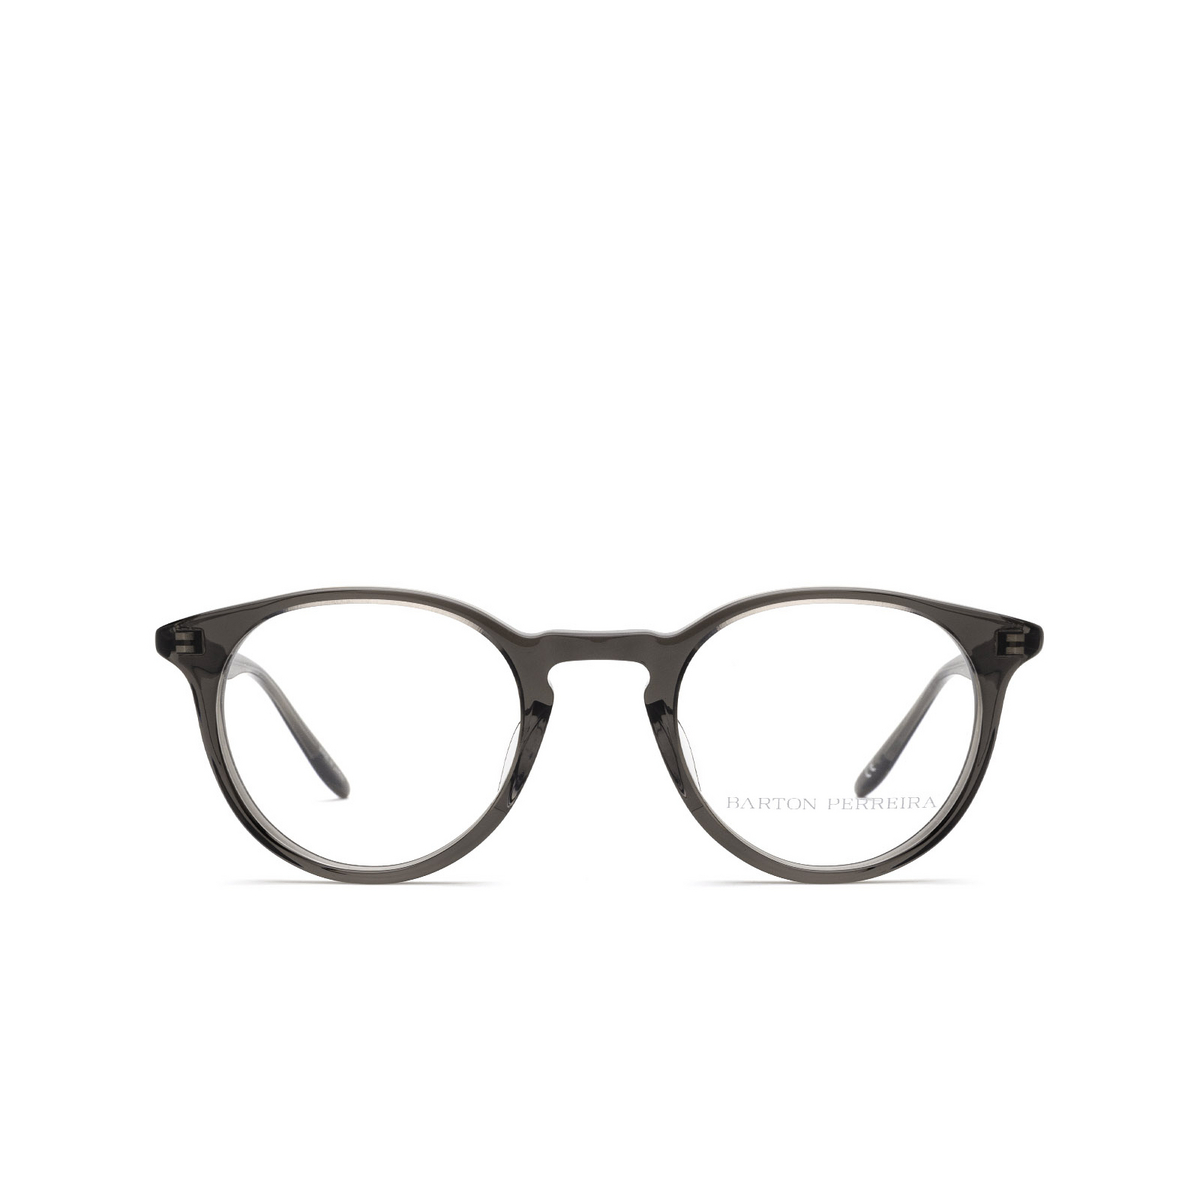 Barton Perreira PRINCETON Eyeglasses 0QG DUS - front view